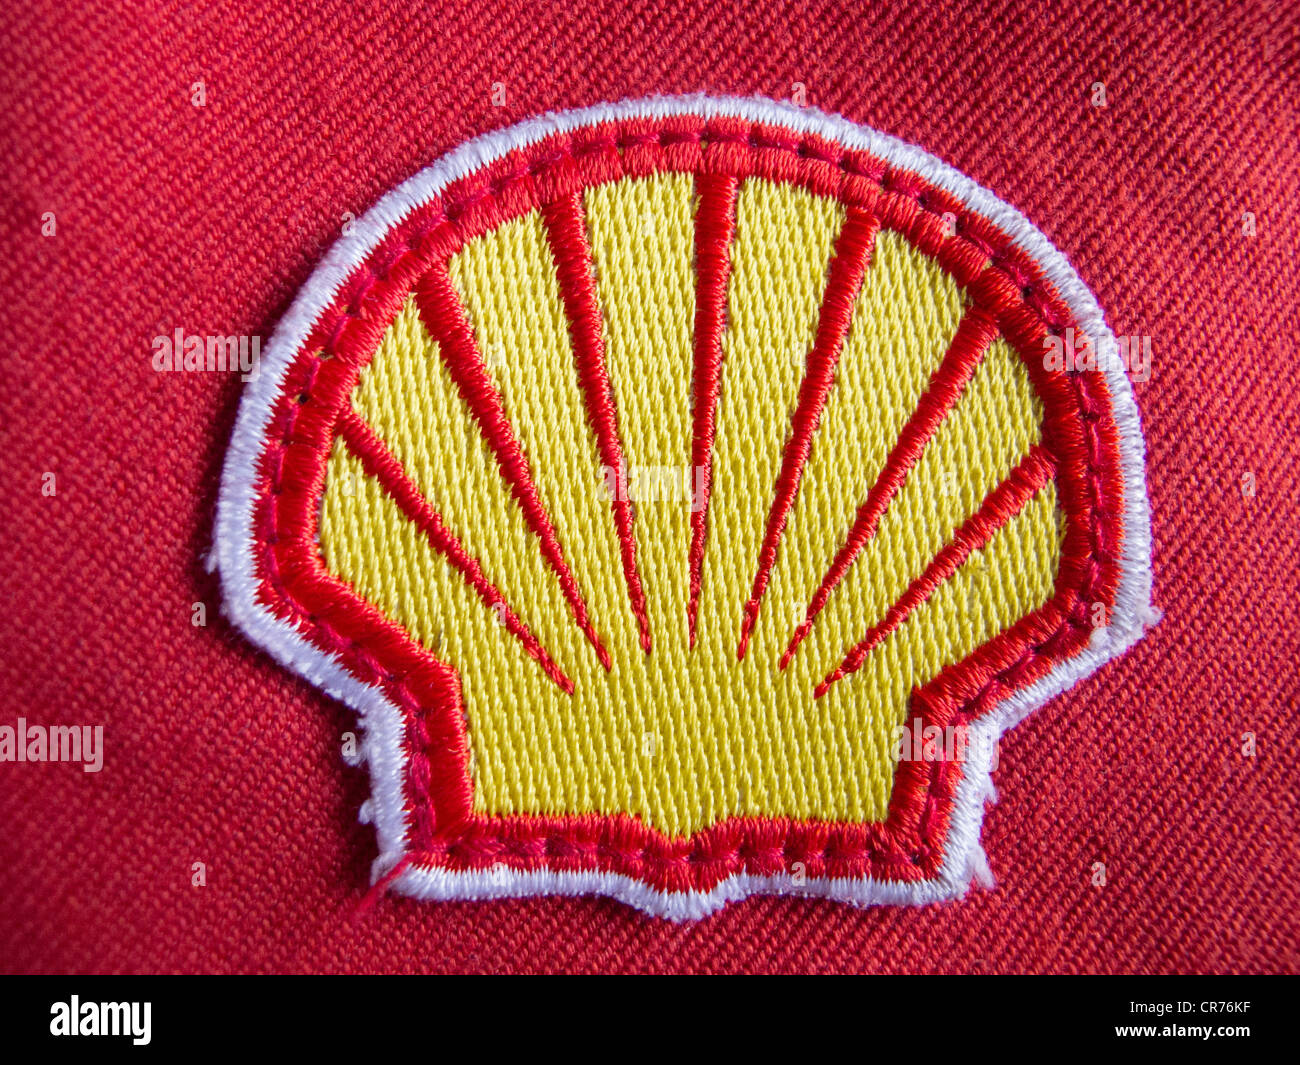 Dettaglio del panno patch logo sulla tuta di sicurezza del lavoratore di Royal Dutch Shell Oil Company. Foto Stock